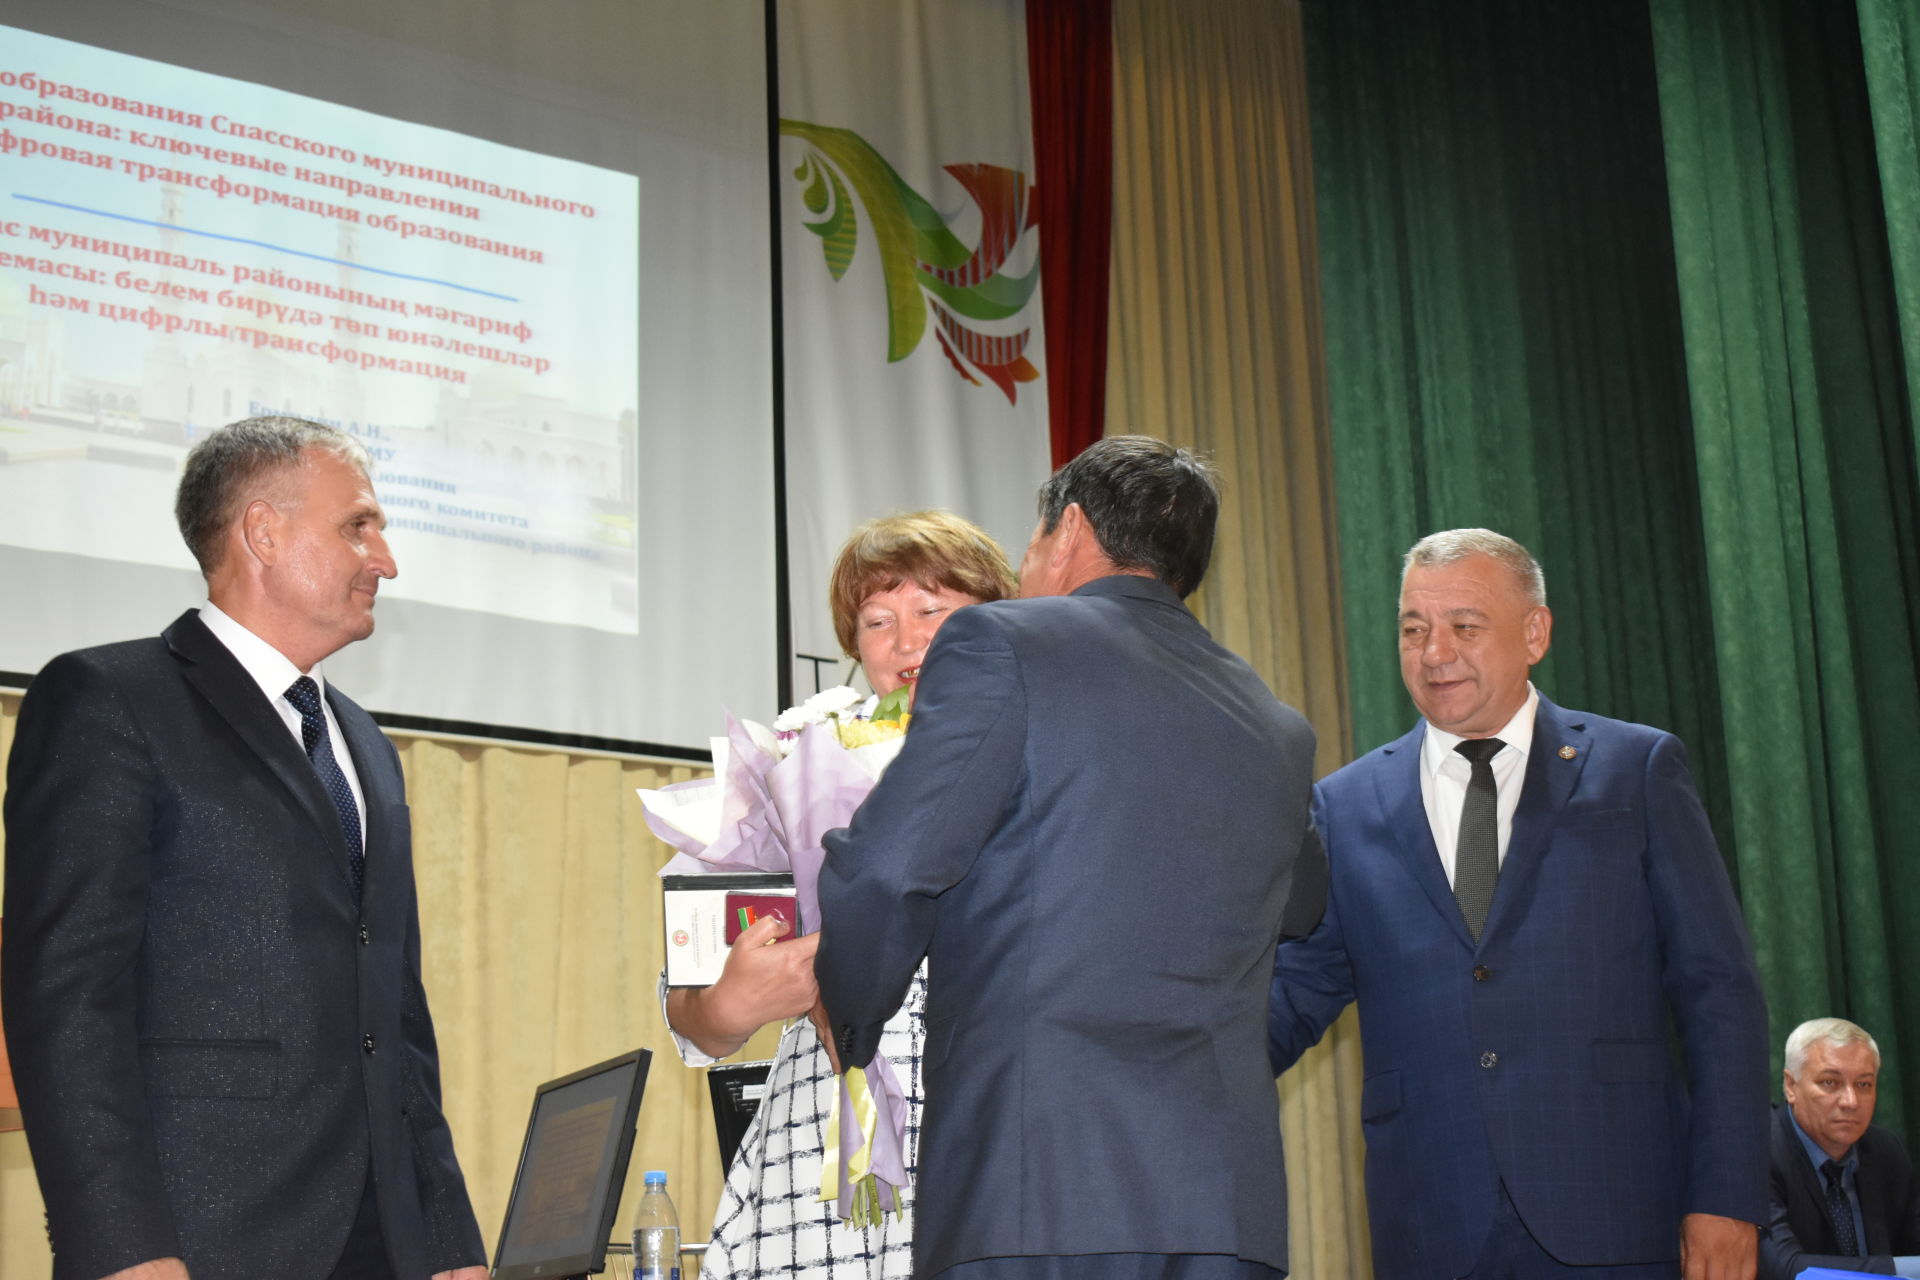 В Болгаре прошла августовская конференция педагогов (ФОТОРЕПОРТАЖ)